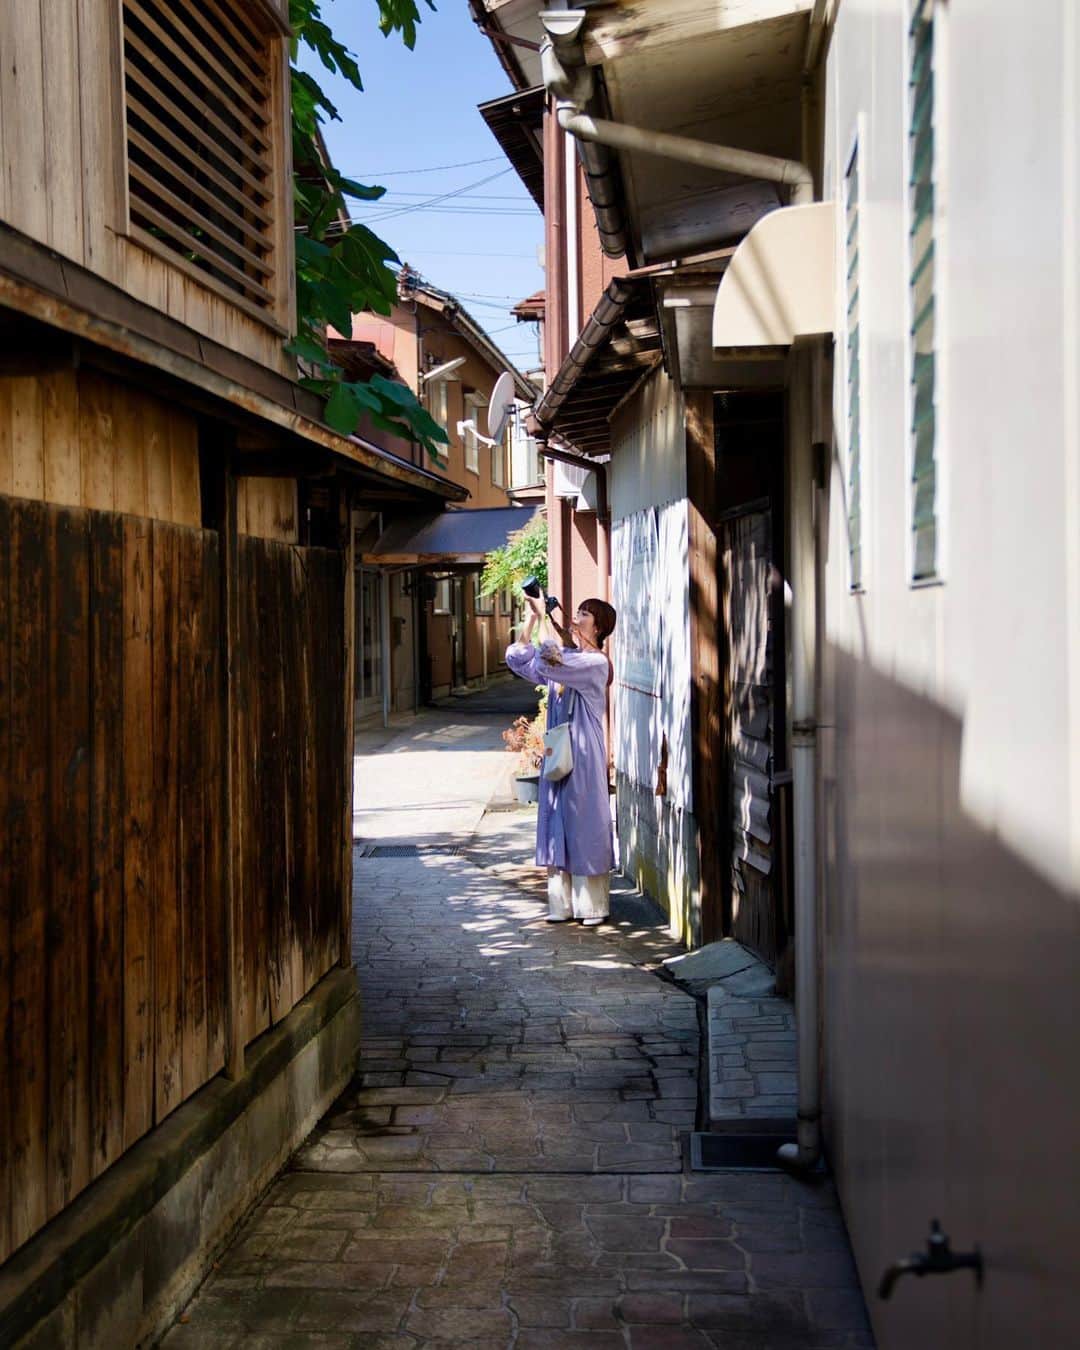 Koichiさんのインスタグラム写真 - (KoichiInstagram)「. . 夏の終わり　新潟 村上の旅  まだ夏の気配が残る9月初旬、新潟の村上市を旅してきました。 新潟へは関空からほんの1時間ちょっと。 新潟ってこんなに近かったんだ。。。  村上は、風情のある町屋の町並みが残る素敵な城下町。 鮭のまちとしても知られています。 美しい海岸線があって、いい温泉があり、食の豊かなまちでした。  2泊3日で、村上の色々なところを巡ってきたので、少しづつ紹介していきます。  For those who are planning a trip to Japan soon, there are some destinations I would like to recommend. It is Murakami in Niigata. Niigata is only about an hour's flight from either Tokyo or Osaka. If you're looking for a traditional Japanese feel and a nostalgic atmosphere, there's no better place than Murakami. Everything about Murakami is amazing, including the cityscape, nature, and food! I will guide Murakami's trip in the next few posts.  @murakamikanko_official #murakami_trip #PR  ［1］村上の町屋通りを巡る --------------  城下町である村上の市街地には「越後村上町屋通り」という風情のあるエリアがあります。 江戸時代の町屋が数多く残っており、そこで営業されているお店もたくさん。 加えて大正、昭和のレトロモダンな建物も混在していて、フォトジェニックなスポットだらけでした。 人が溢れる京都に行くより、数倍楽しいと思うな村上。  📍千年鮭きっかわ 村上の町家通りのアイコン的存在がここ千年鮭きっかわ。 JR東日本の吉永小百合さんのCMで有名になったので、まずはポスターを真似てワンショット。  📍益甚酒店 伝統の酒処、村上に来たのだから、美味しい日本酒を見つけないと。 。。。ということで、ご主人お薦めの地酒「大洋盛」を利き酒させて頂く。 これは美味い！即買いです。  📍茶館きっかわ 嘉門亭 この日はお休みで残念だったけど、昨年オープンした村上茶を様々に愉しめるサロン。 中庭がとても素敵らしい。  📍安善寺 黒塀通りのある寺町は、いくつものお寺が立ち並ぶエリア。 荘厳な山門がある安善寺は、門をくぐると静寂の世界。  📍黒塀通り 城下町の風情が残る、黒塀が続く小路。 角を曲がるたび、出会う風景に趣があって楽しい。  📍赤坂屋小路 町屋通りから一本入ると、こんな石畳の路地が。 町家の風情と、昭和レトロのミックス感がまたいいなぁ。 ゴミひとつ落ちてないのに感心。  📍若林家住宅 村上藩の武家屋敷で重要文化財。 軒に吊るされた塩引き鮭は村上の風物詩。  📍旧村上高校門舎（村上市役所） 昭和初期にに建てられた、レトロな洋風建築の小さな門舎。 学校の跡地に建った市役所の敷地で大切に保存されています。  📍十輪寺茶や 岩船屋 町家巡りのひと休みにぴったりの団子屋さん。 みたらし団子と、スッキリした冷たい村上茶でエナジー補給。  → ［2］村上の海岸線を巡る・笹川流れ　に続く  .」9月29日 17時21分 - koichi1717